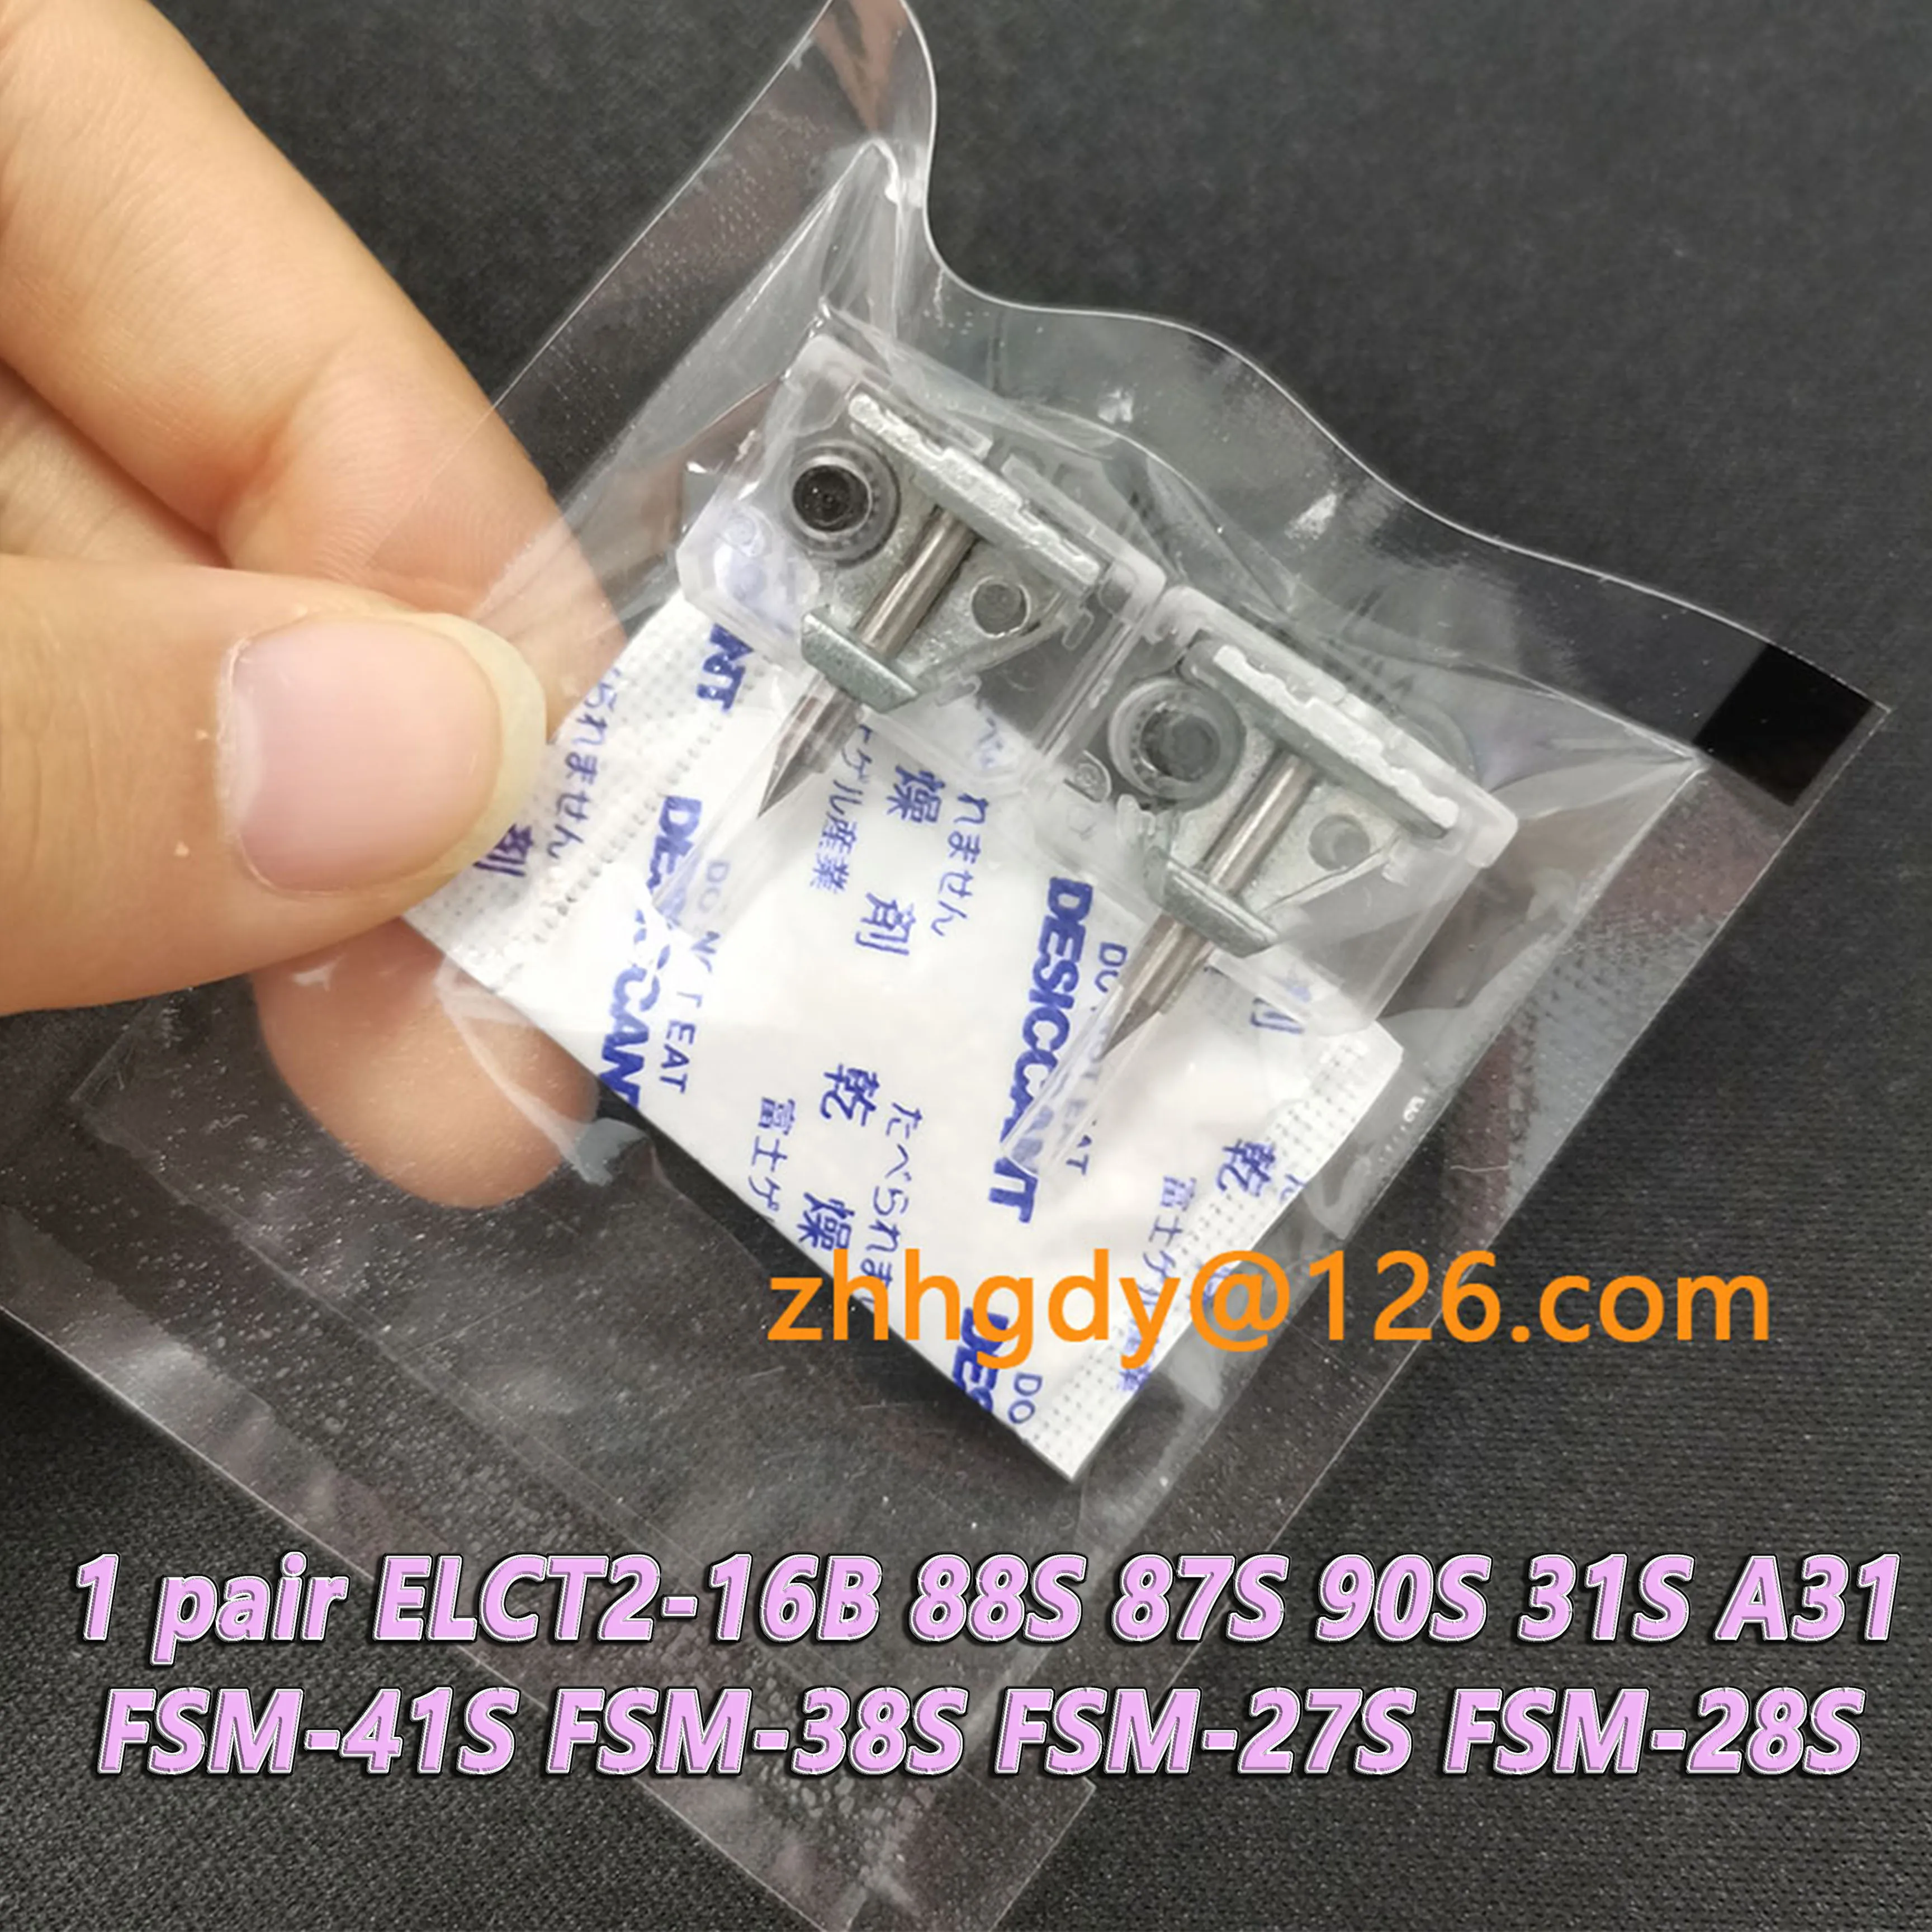 1 pair Electrodes 88S 87S 90S 31S A31 FSM-41S FSM-38S FSM-27S FSM-28S Fiber Fusion Splicer ELCT2-16B Electrodes Rod